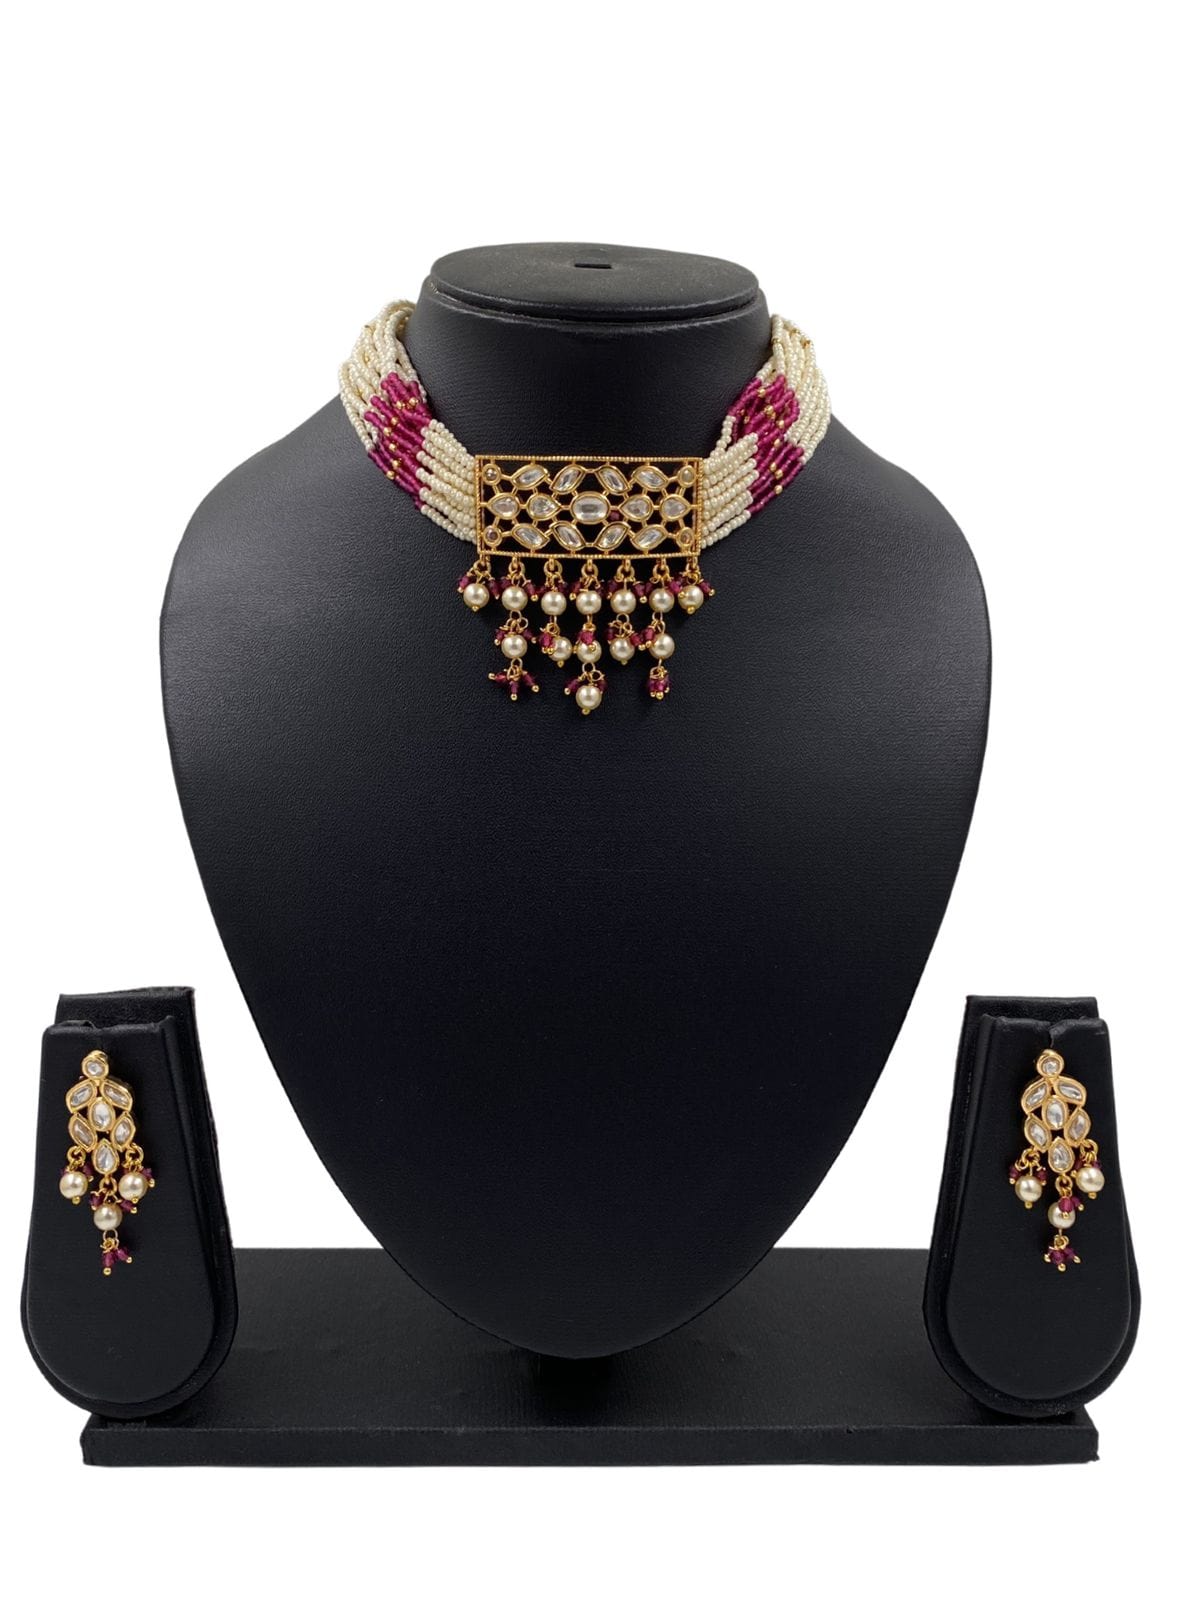 Supriyaa Simple Kundan And Pearl Choker By Gehna Shop Choker Necklace Set